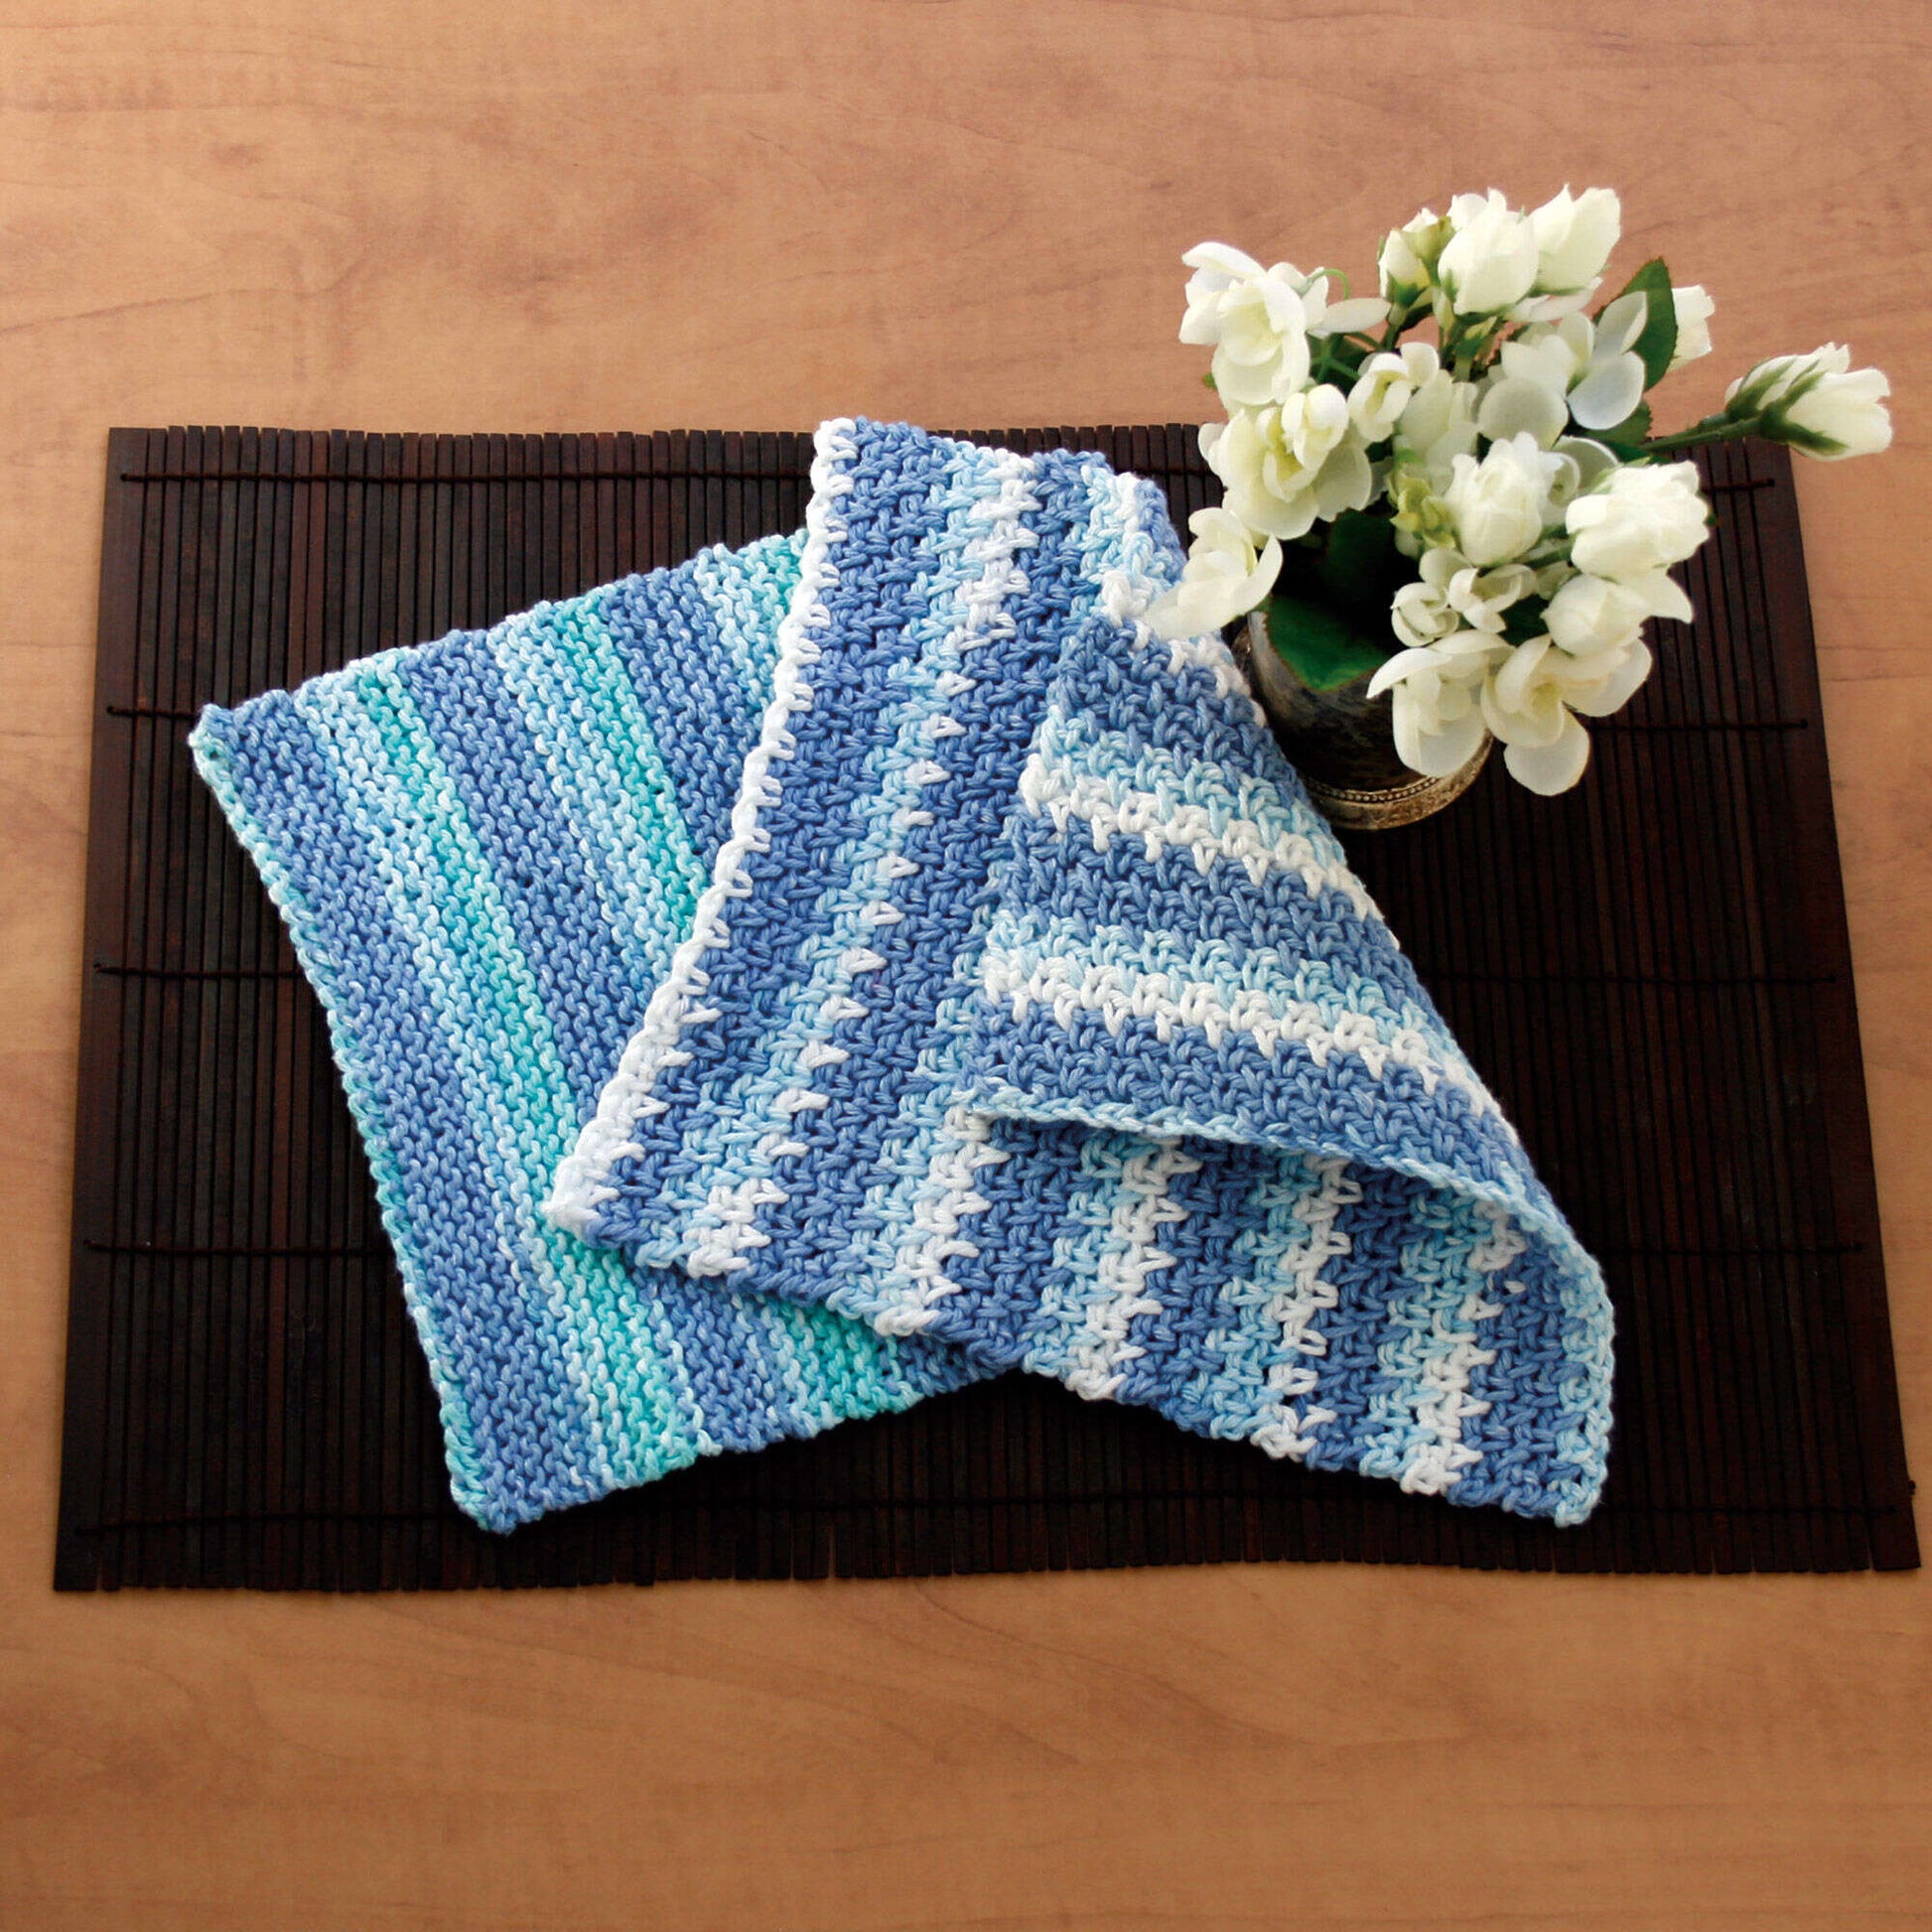 Free Lily Sugar'n Cream Knit Dishcloth Pattern